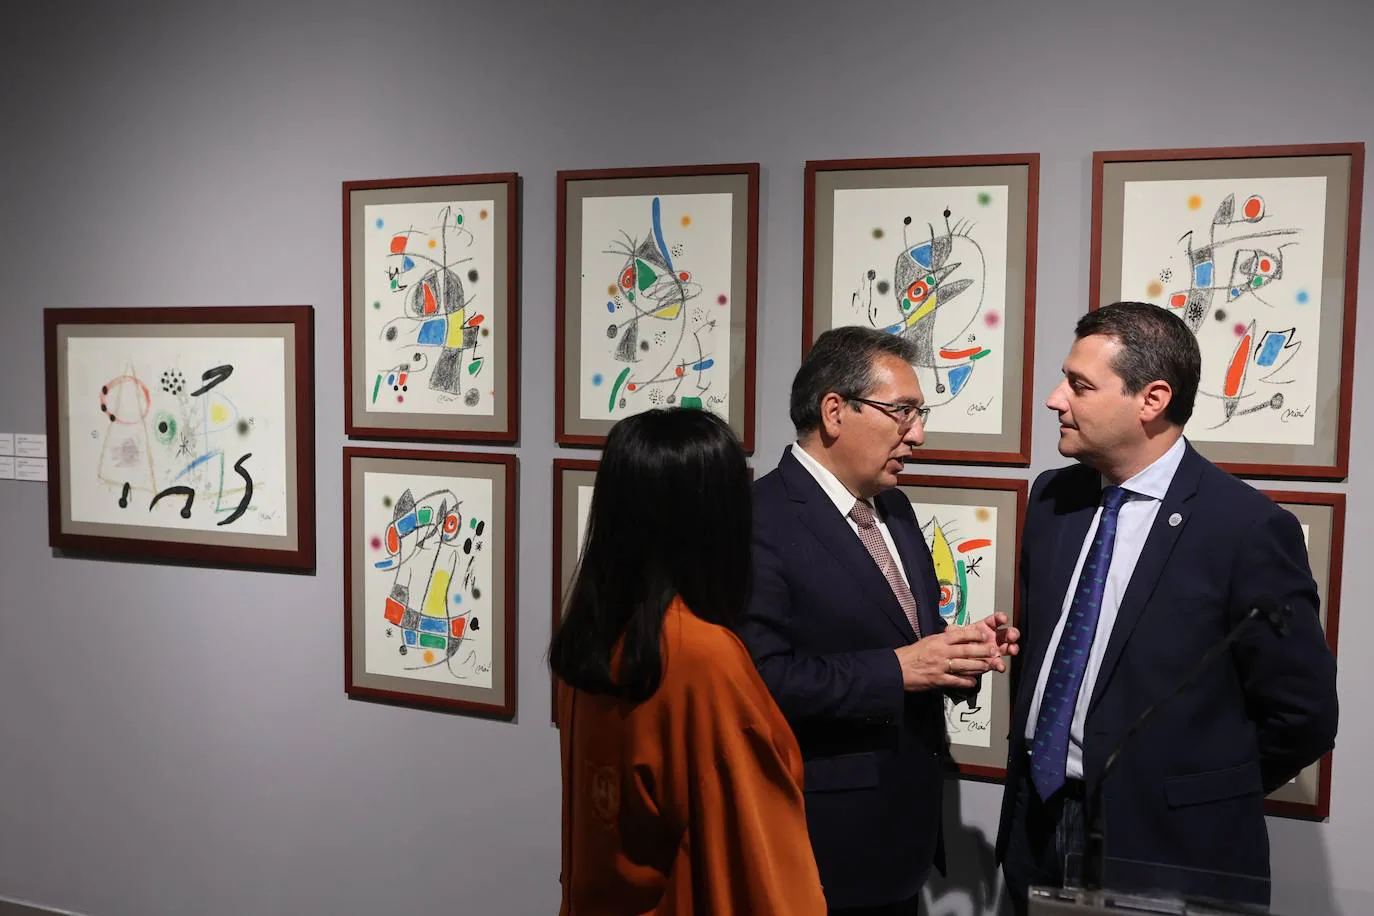 La exposición de Picasso, Dalí y Miró en Córdoba, en imágenes